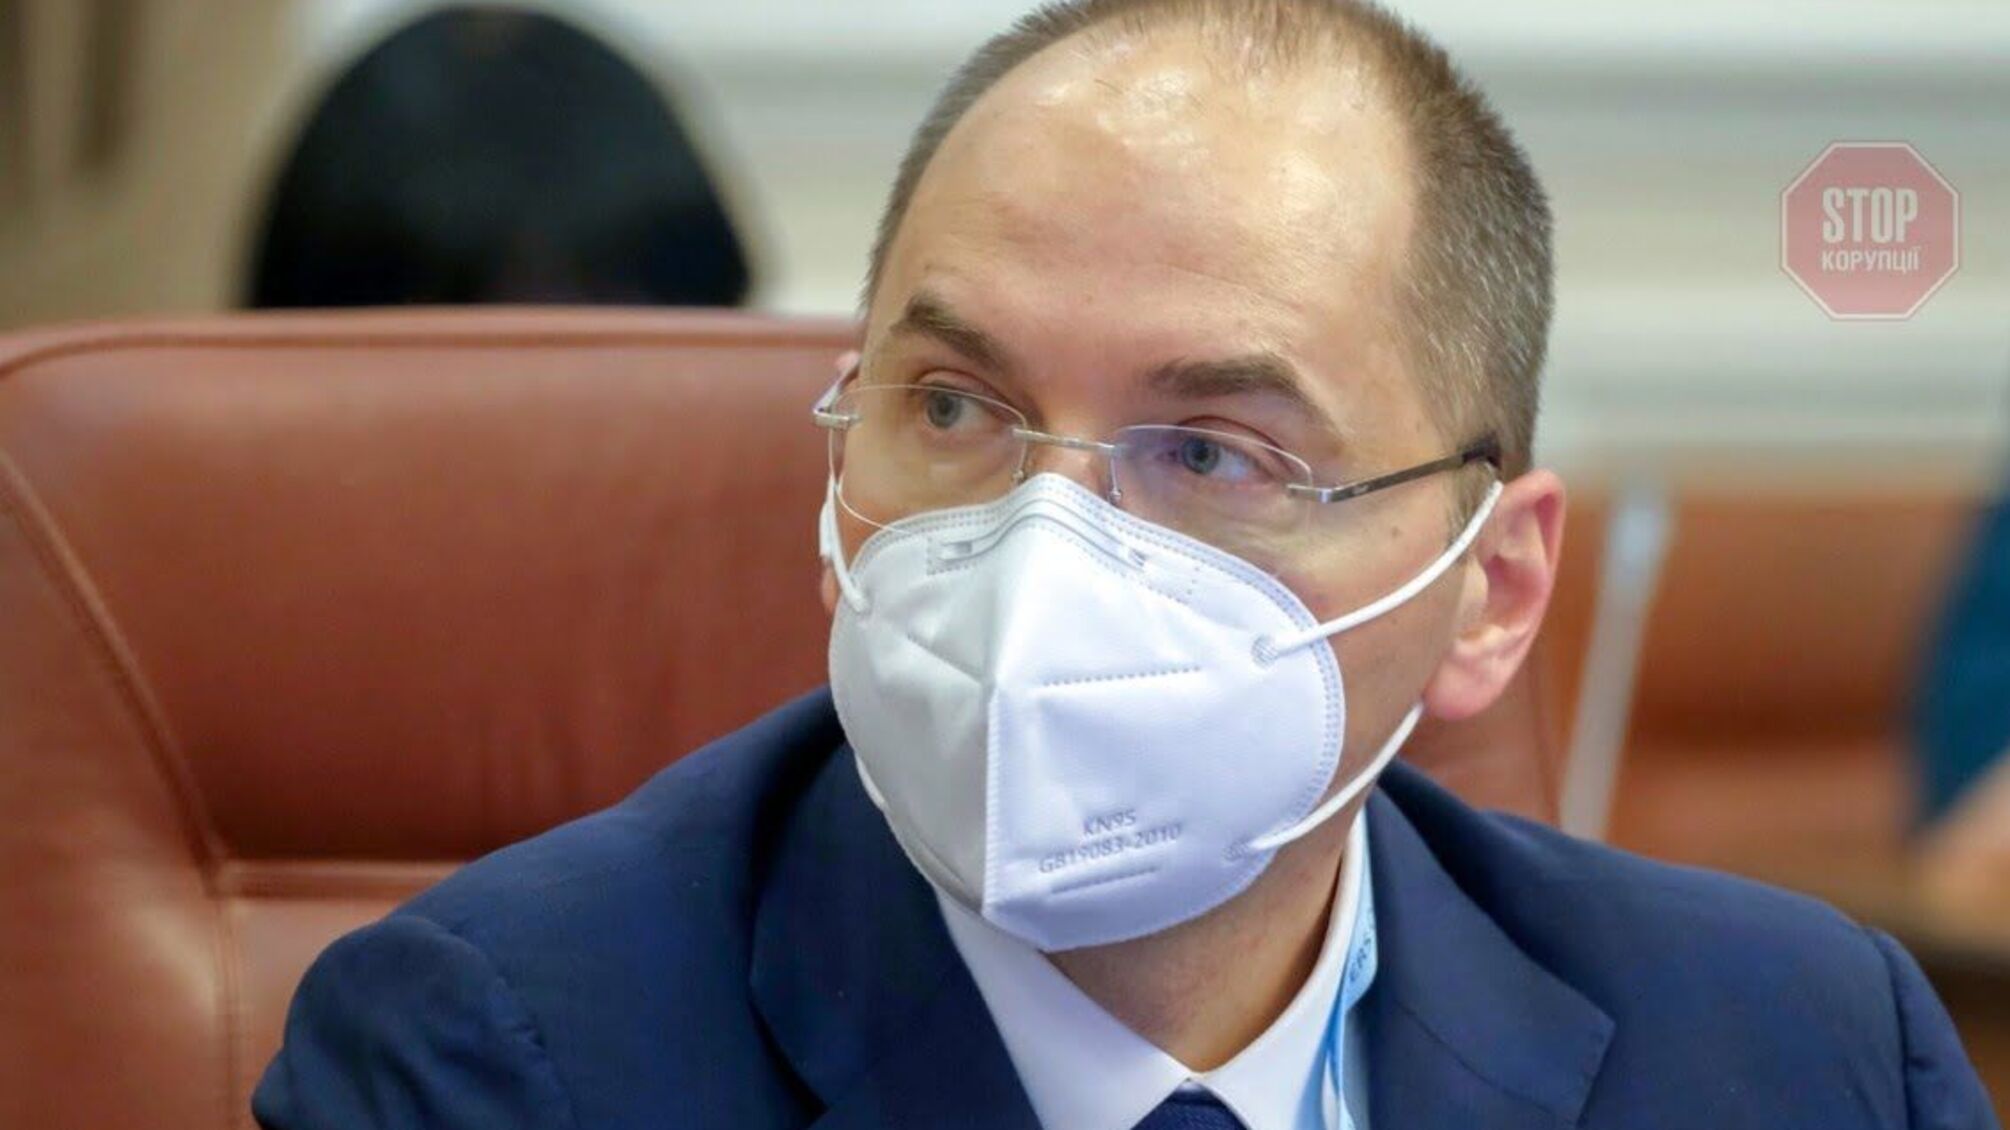 Глава МОЗ України підписав документи для отримання вакцини від коронавірусу